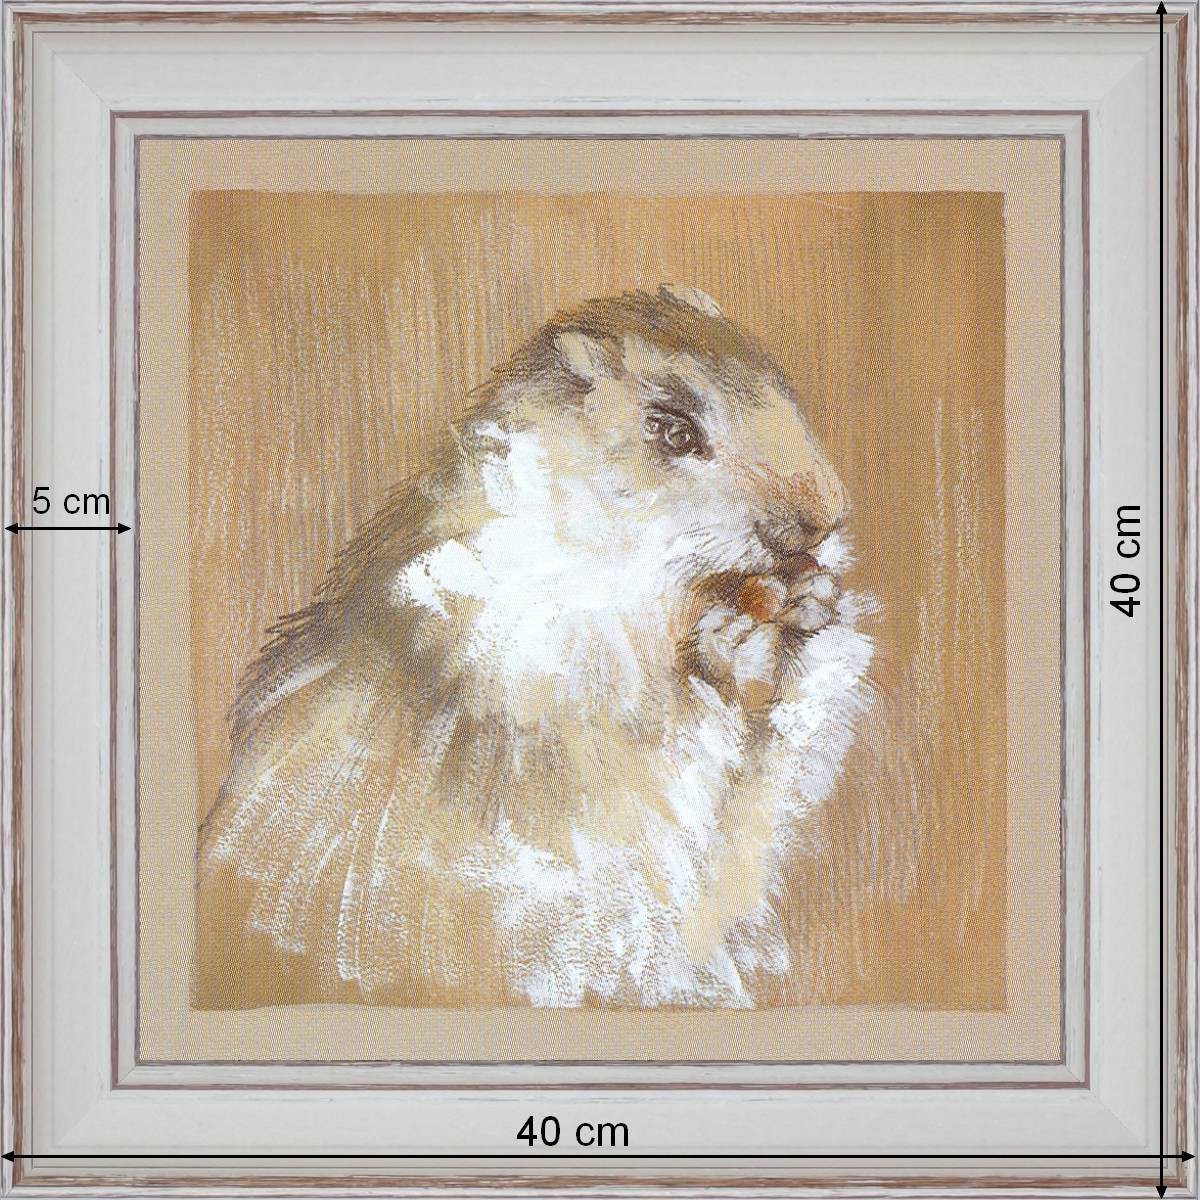 Marmotte - dimensions 40 x 40 cm - Blanc cassé